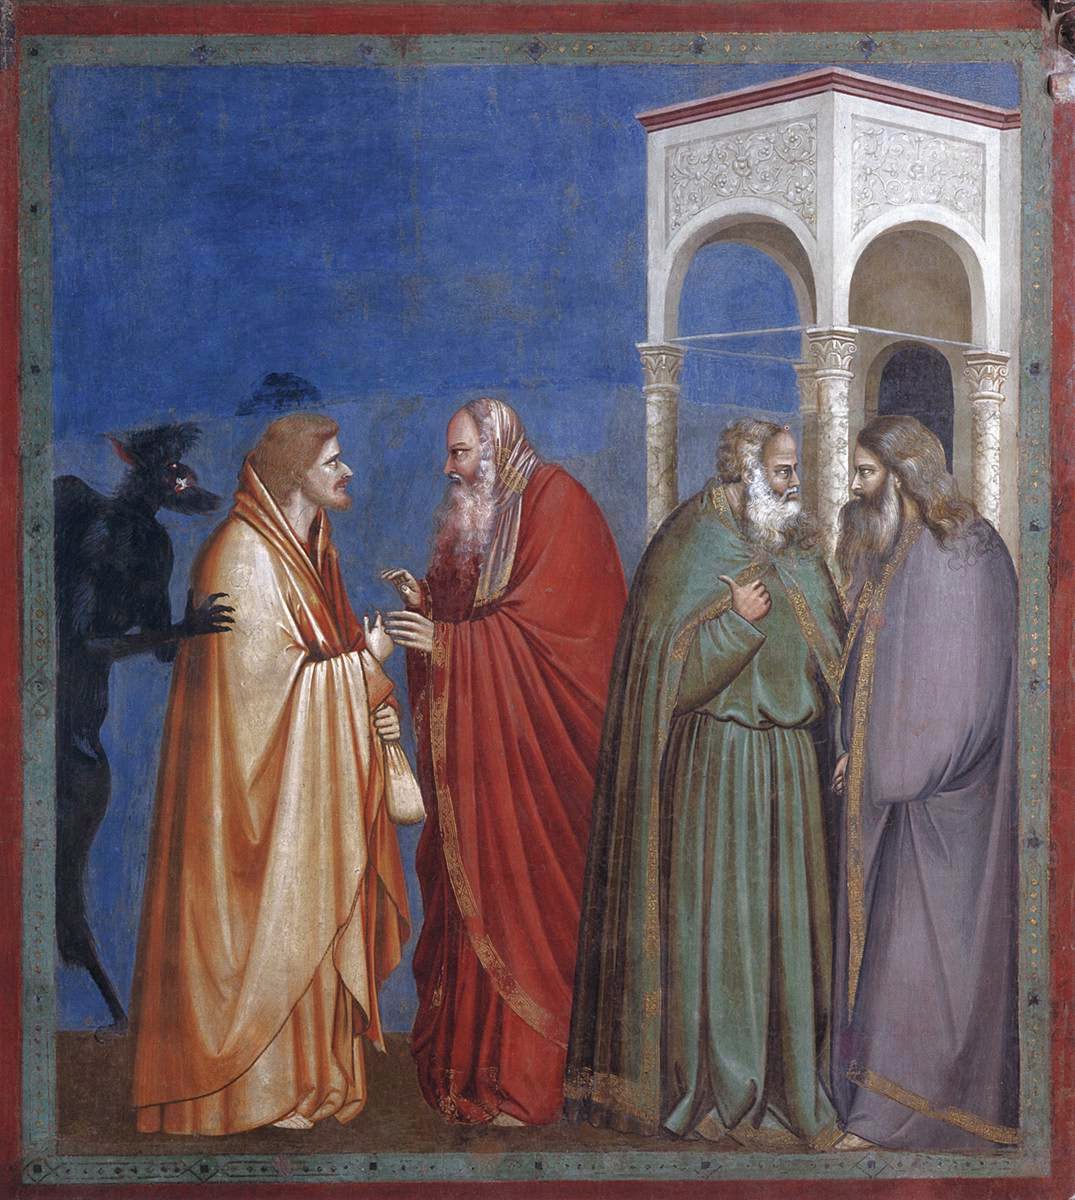 Giotto di Bondone: The bargain of Judas (1304-1306)